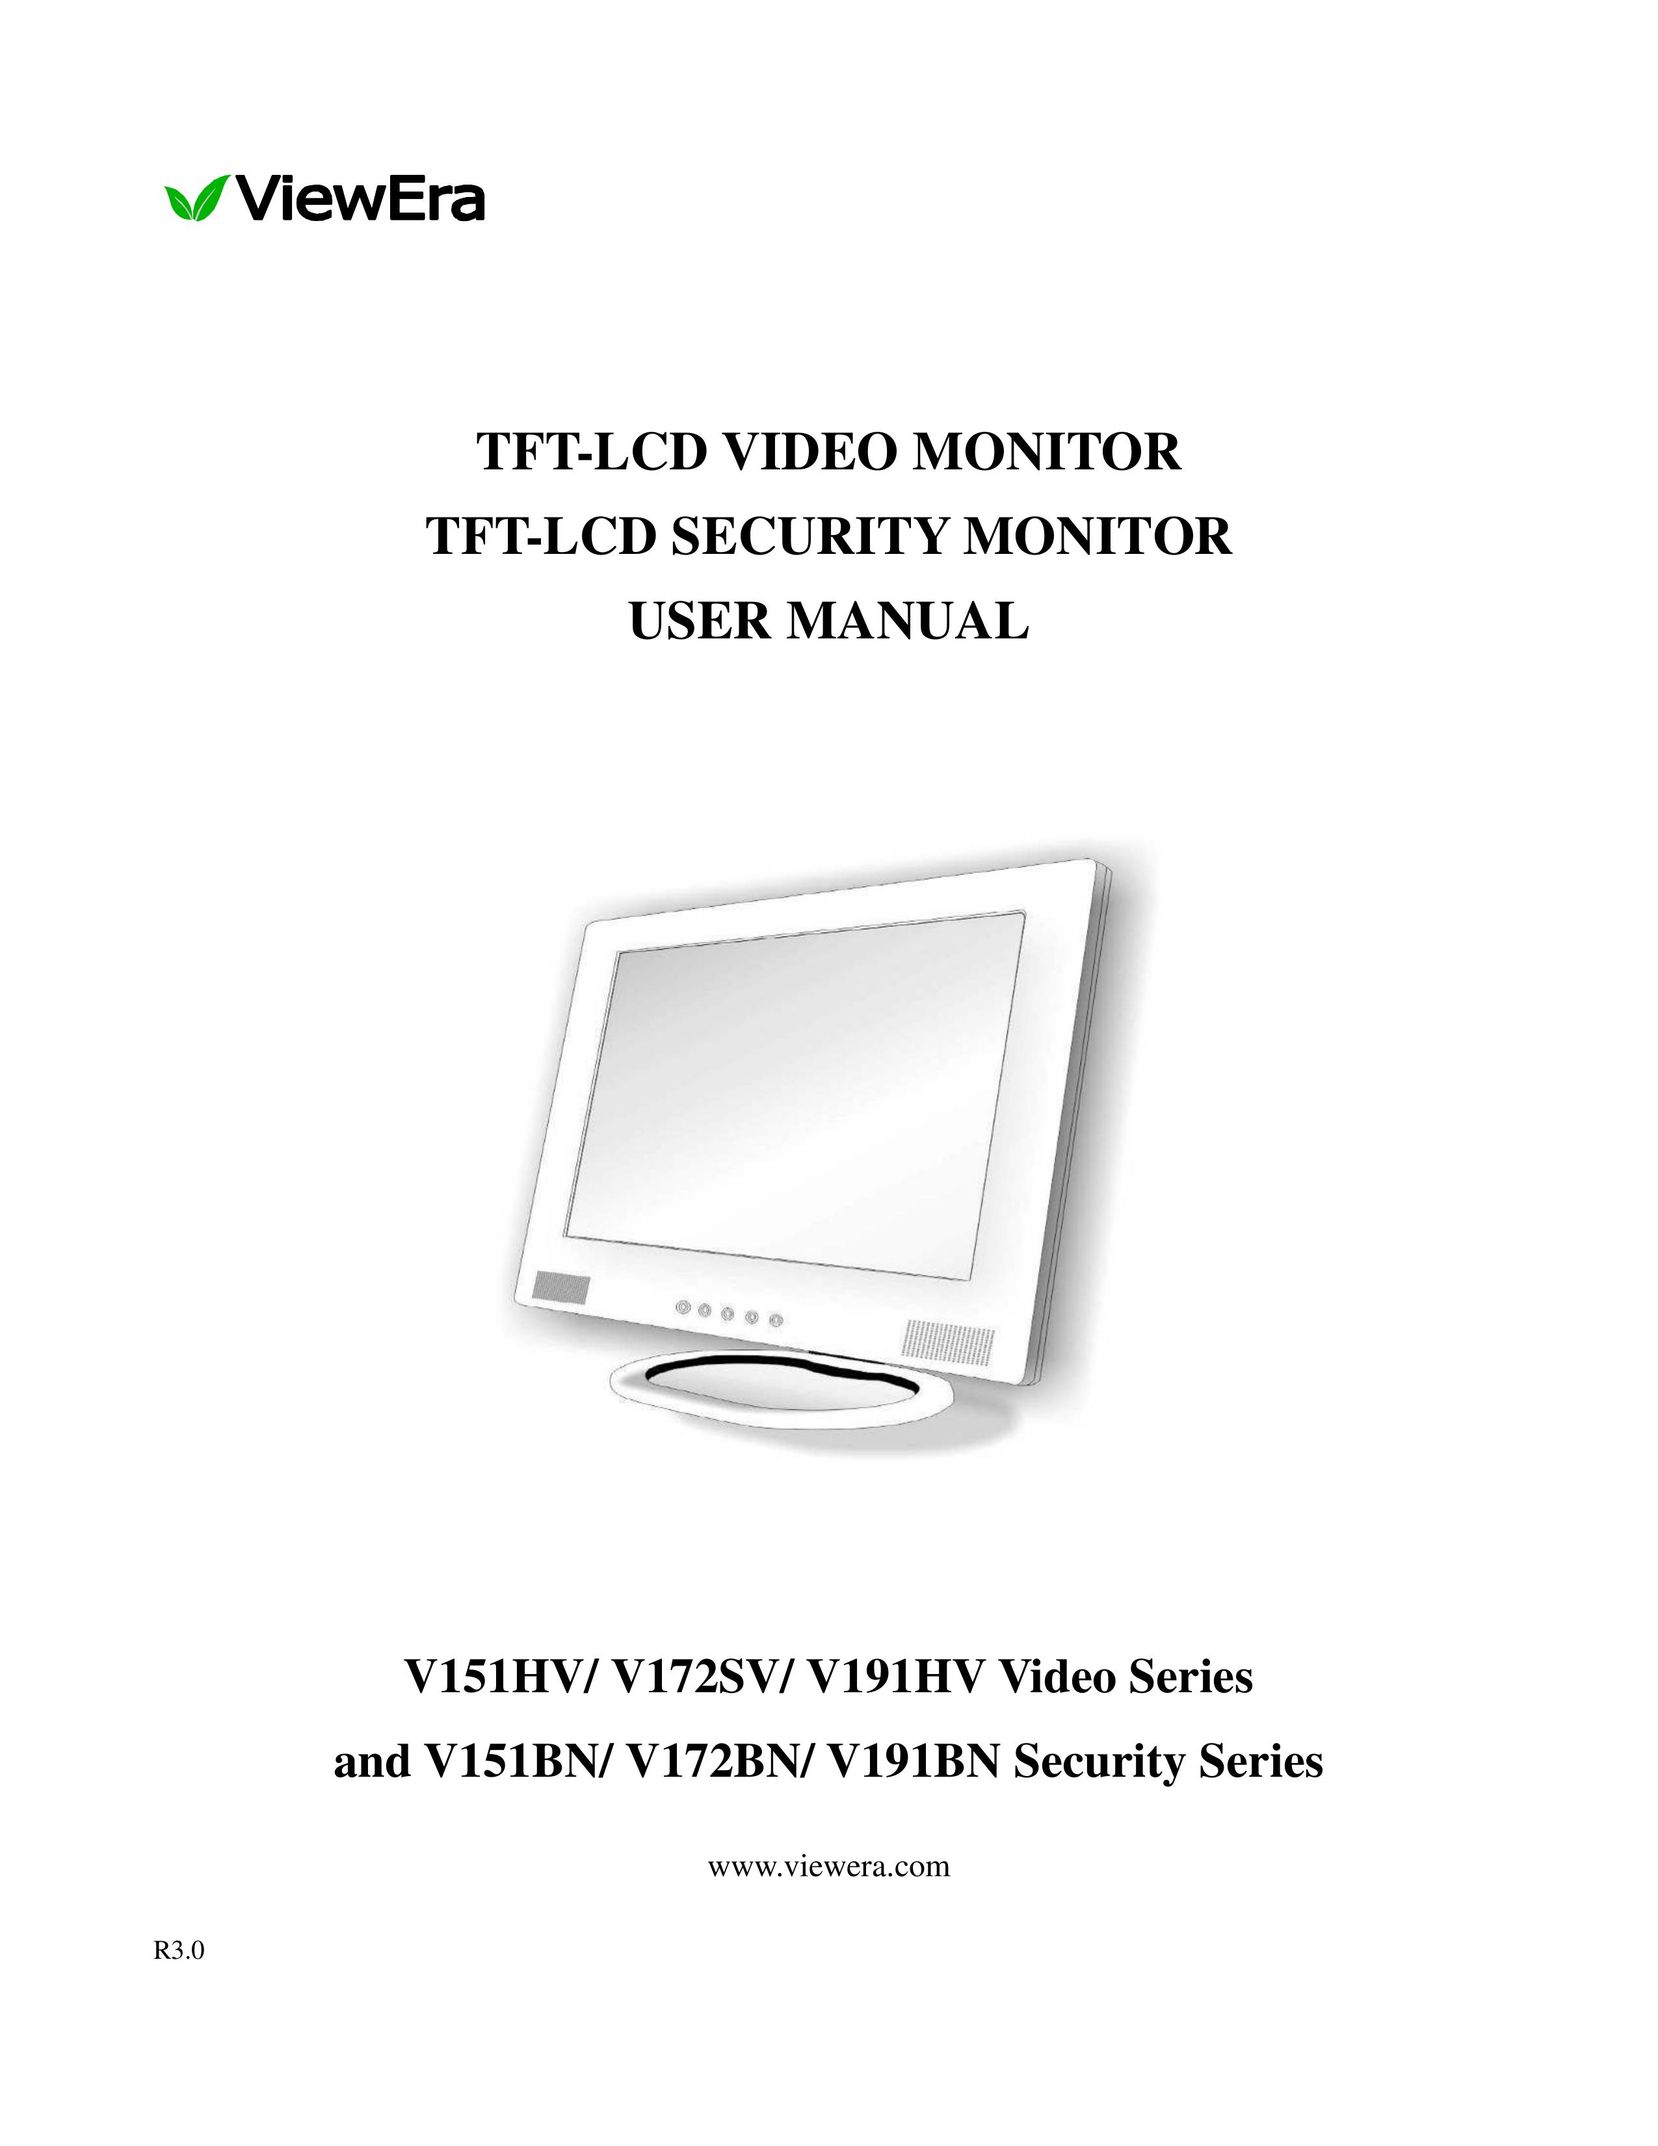 ViewEra V172BN Computer Monitor User Manual